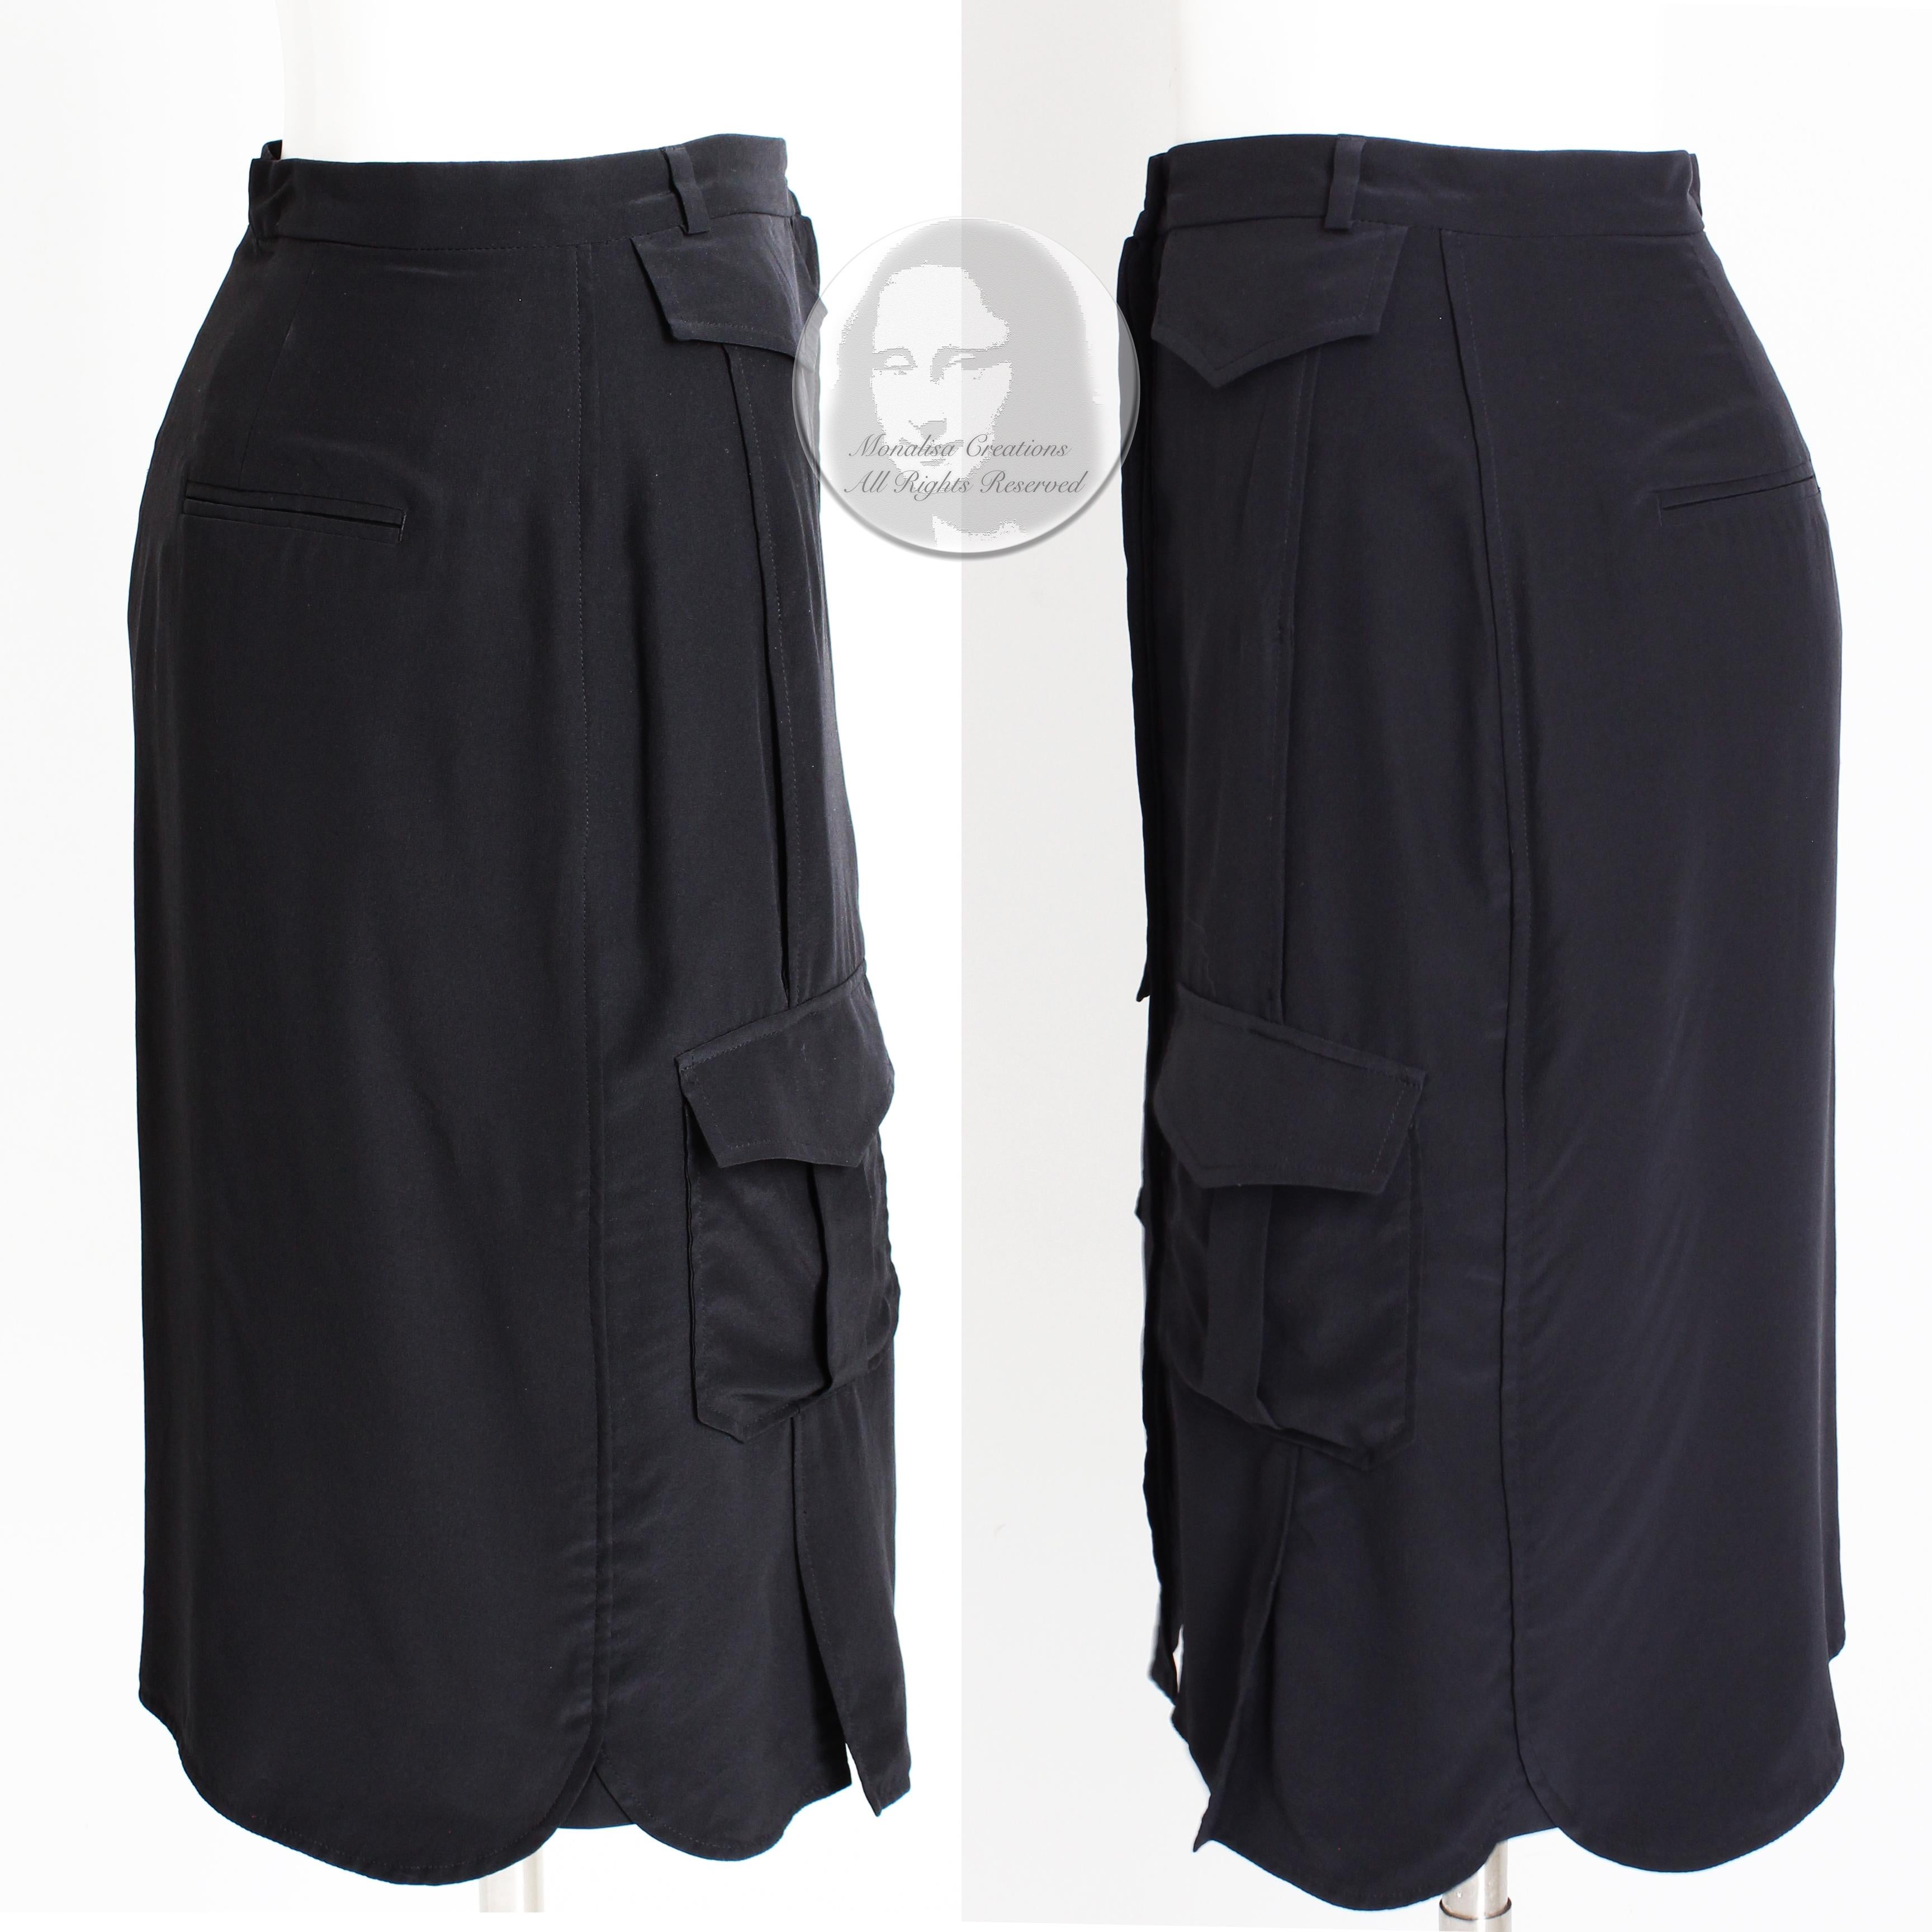 Celine Paris Silk Skirt Button Front Patch Pocket Phoebe Philo Black NWT Size 38 1